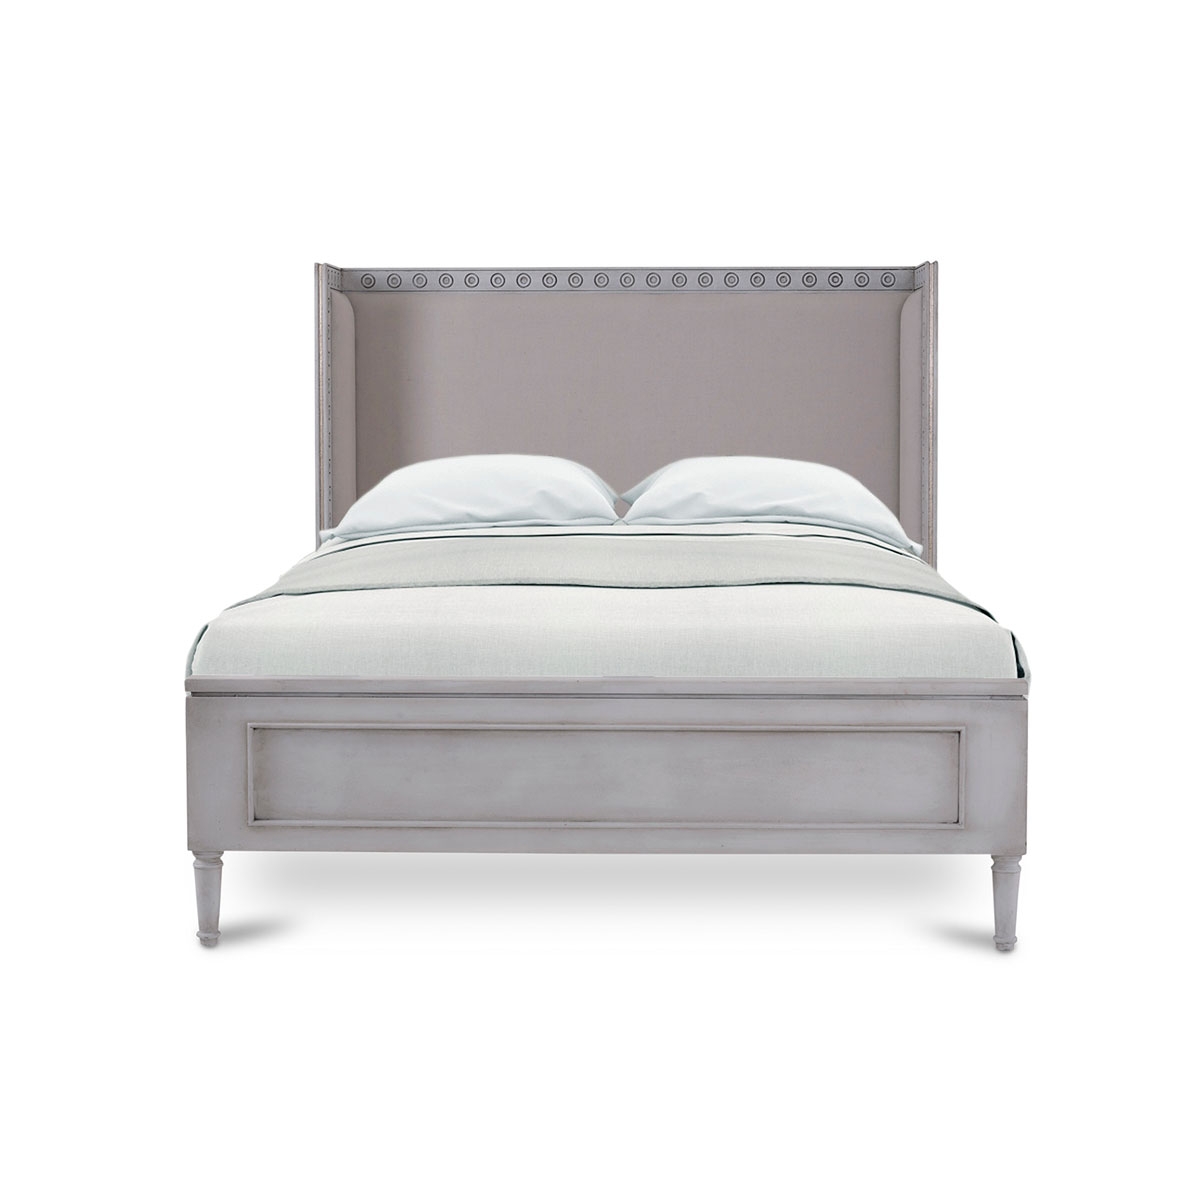 Circa Queen Size Bed